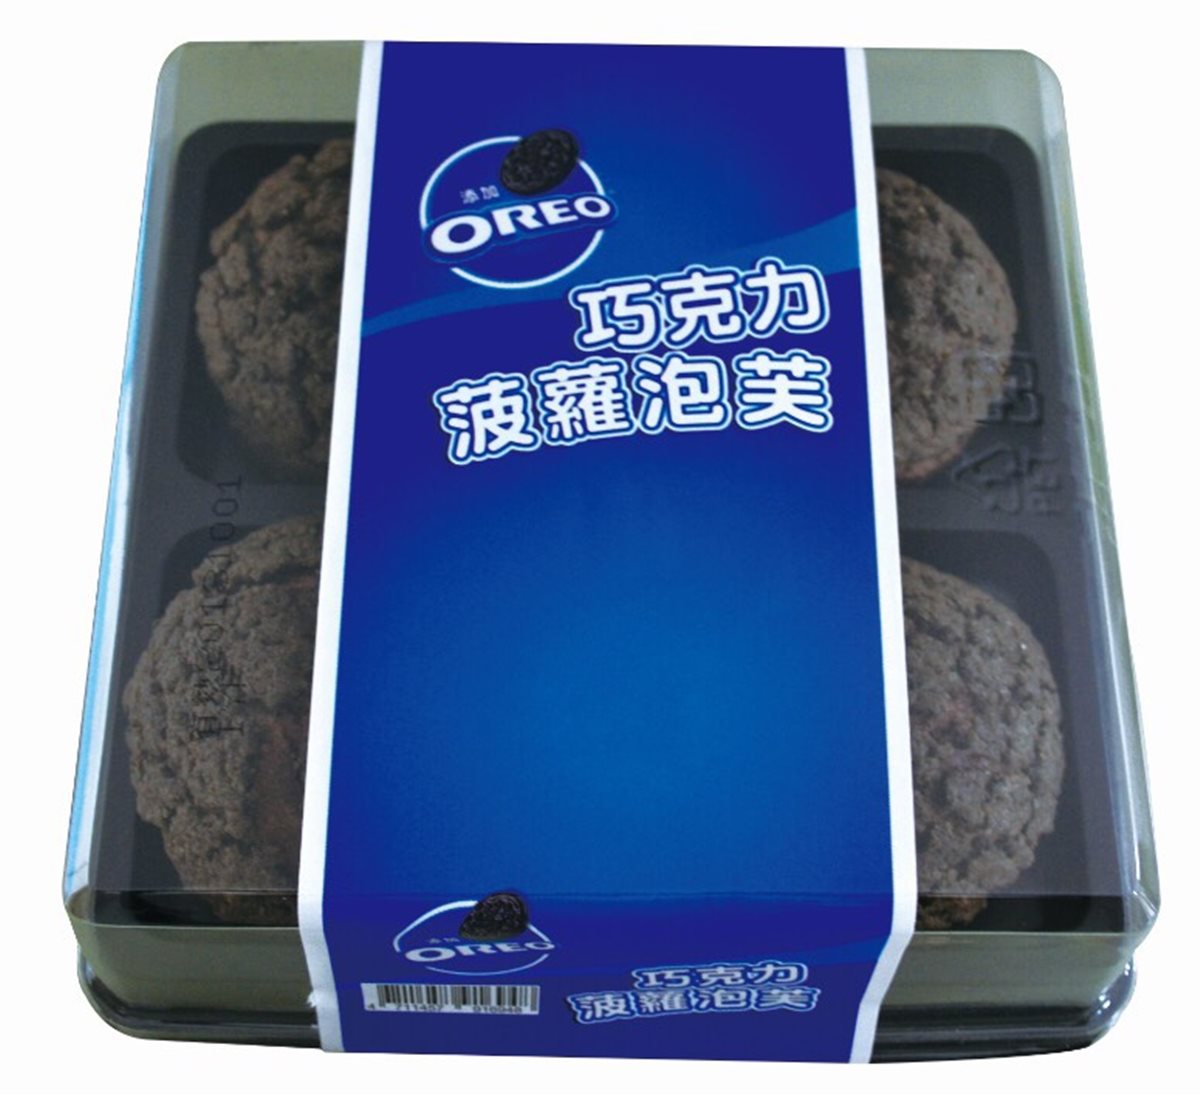 就是愛OREO！「奧利奧巧克力」全球獨家「聯名甜點蛋糕」台灣買得到